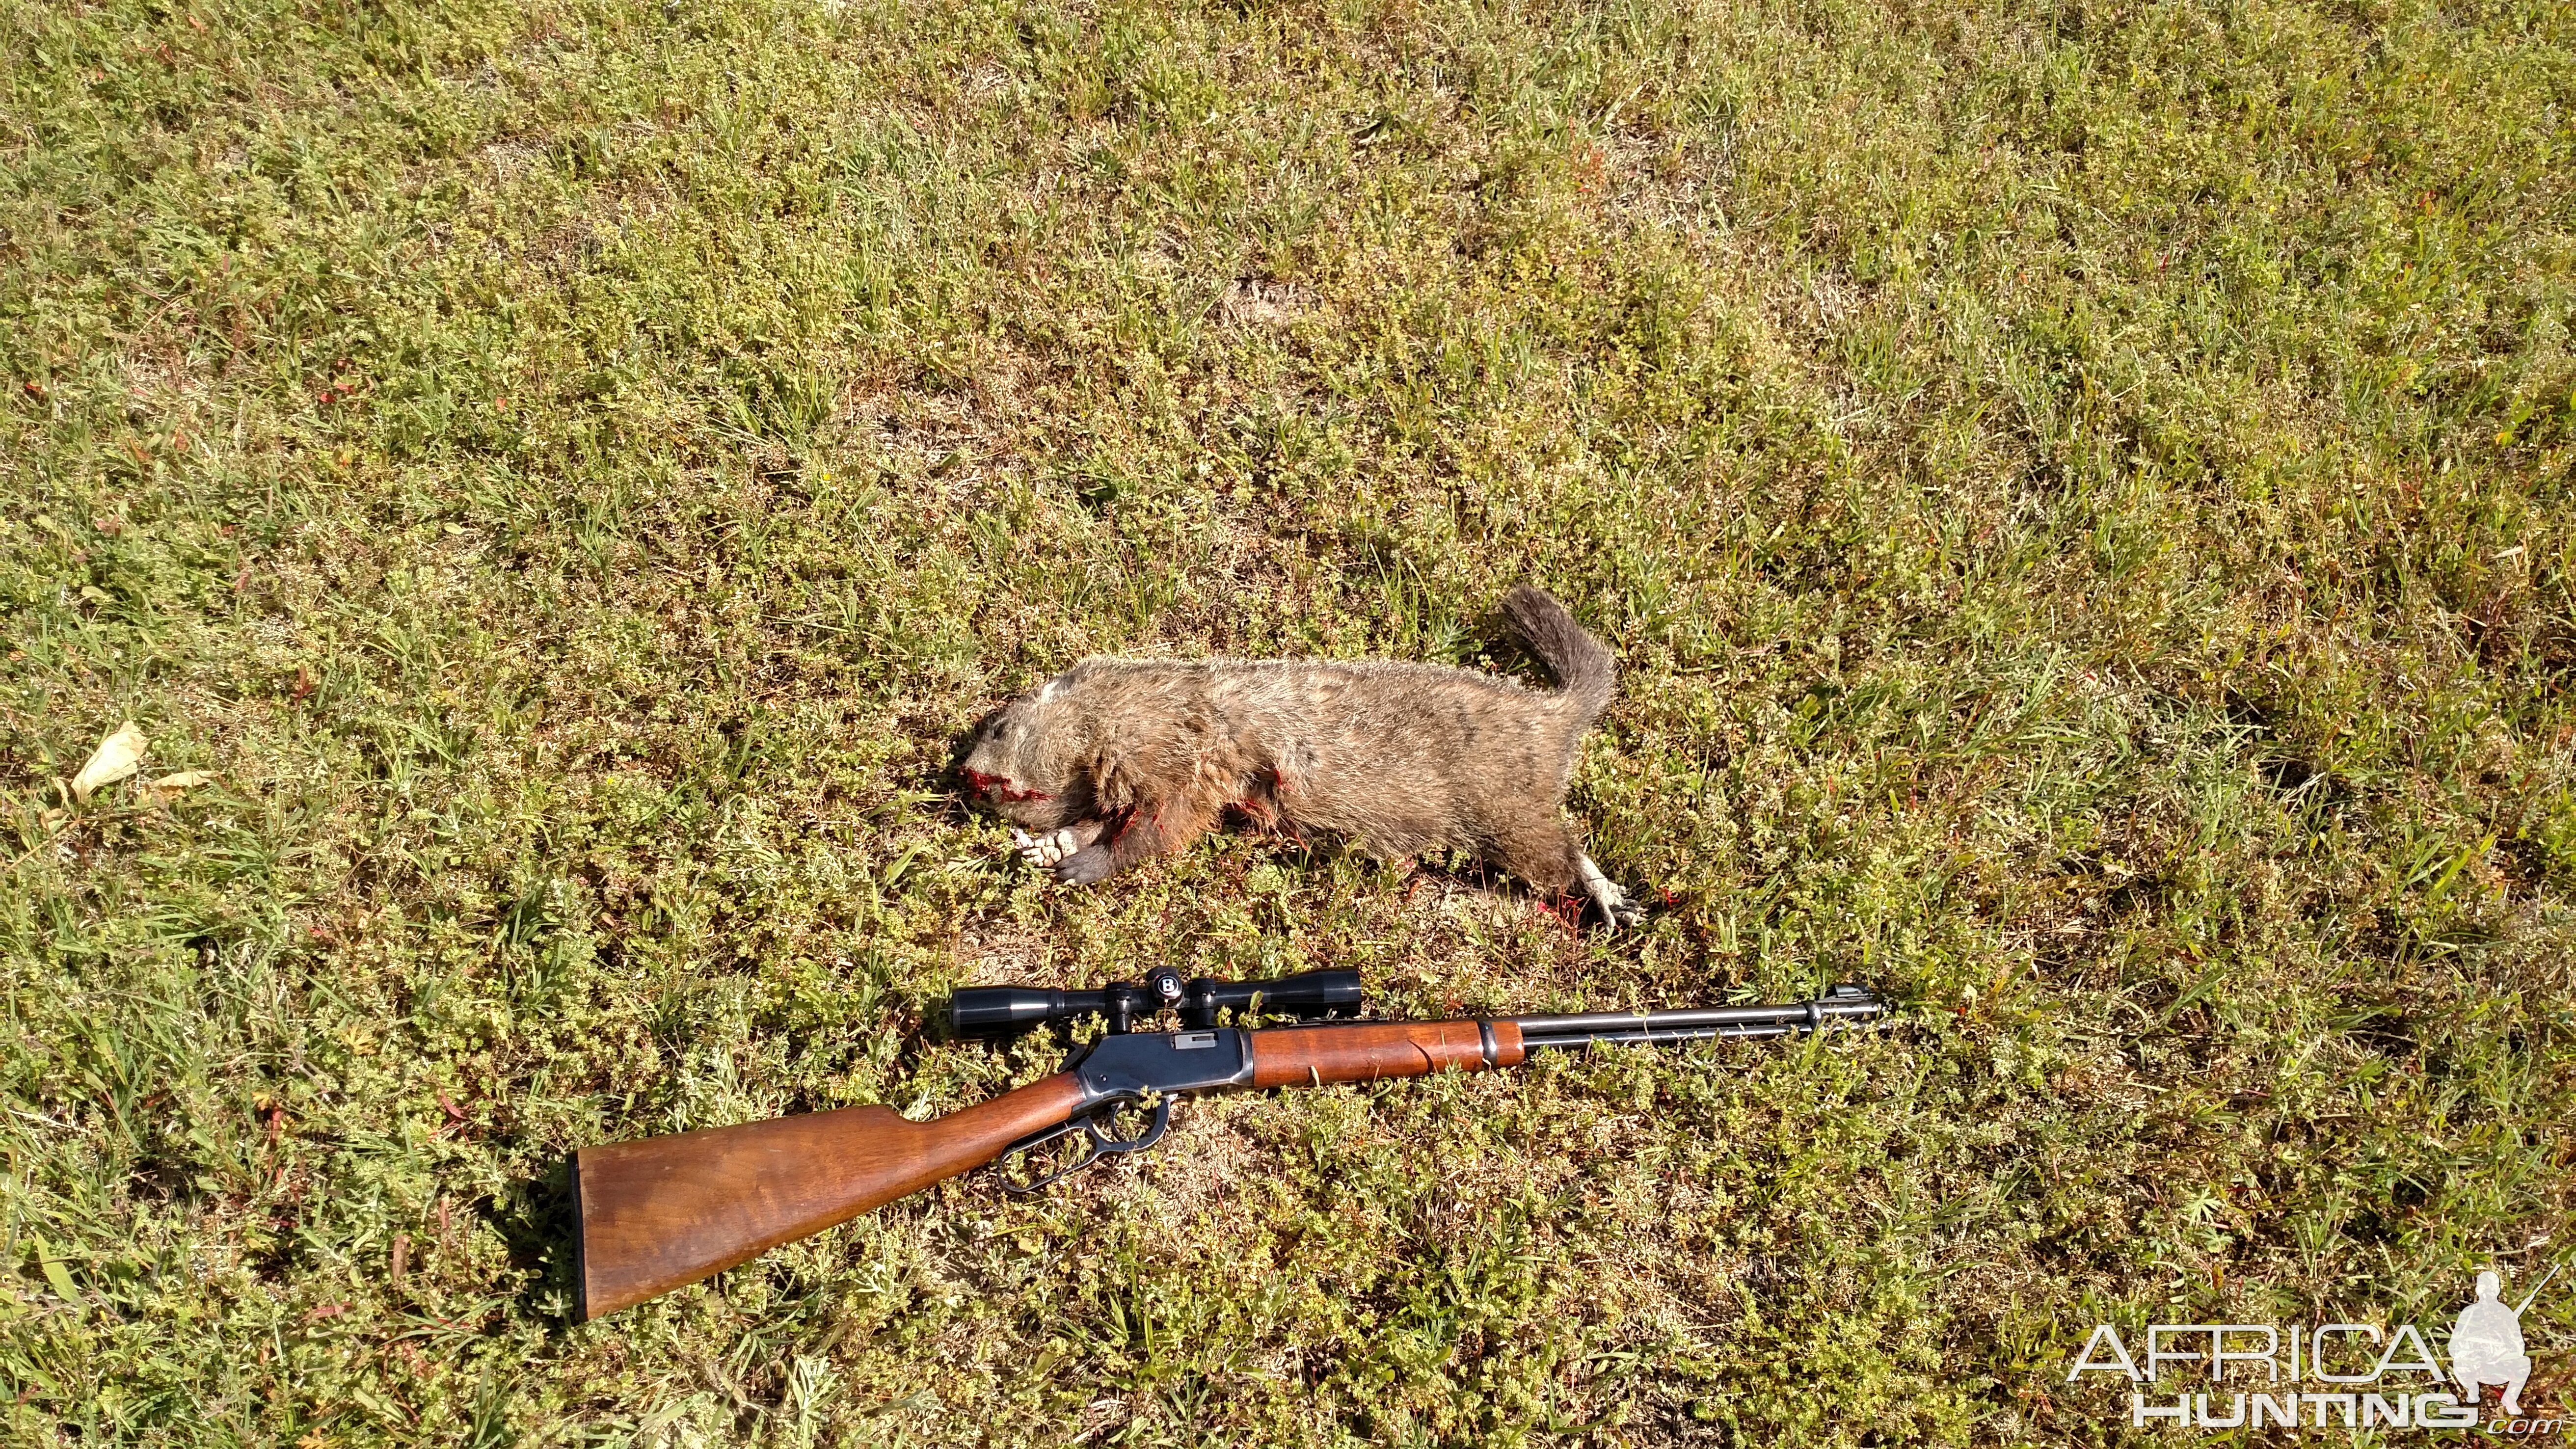 USA Hunt Groundhog